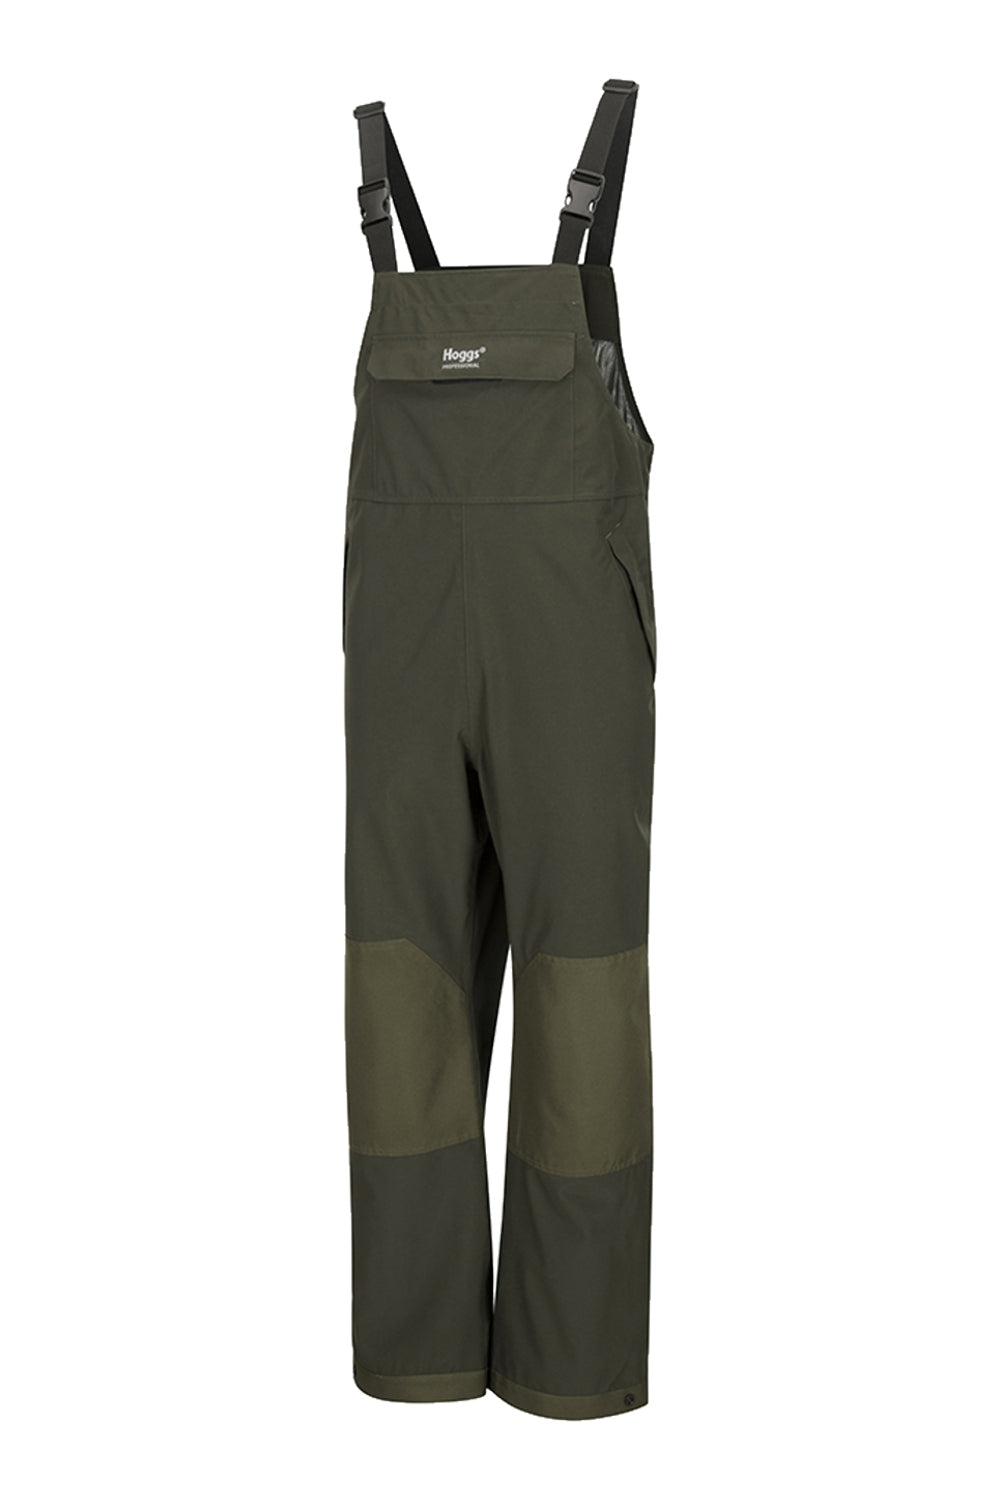 Flexothane Classic - Rotterdam Waterproof Trousers x Size: Green